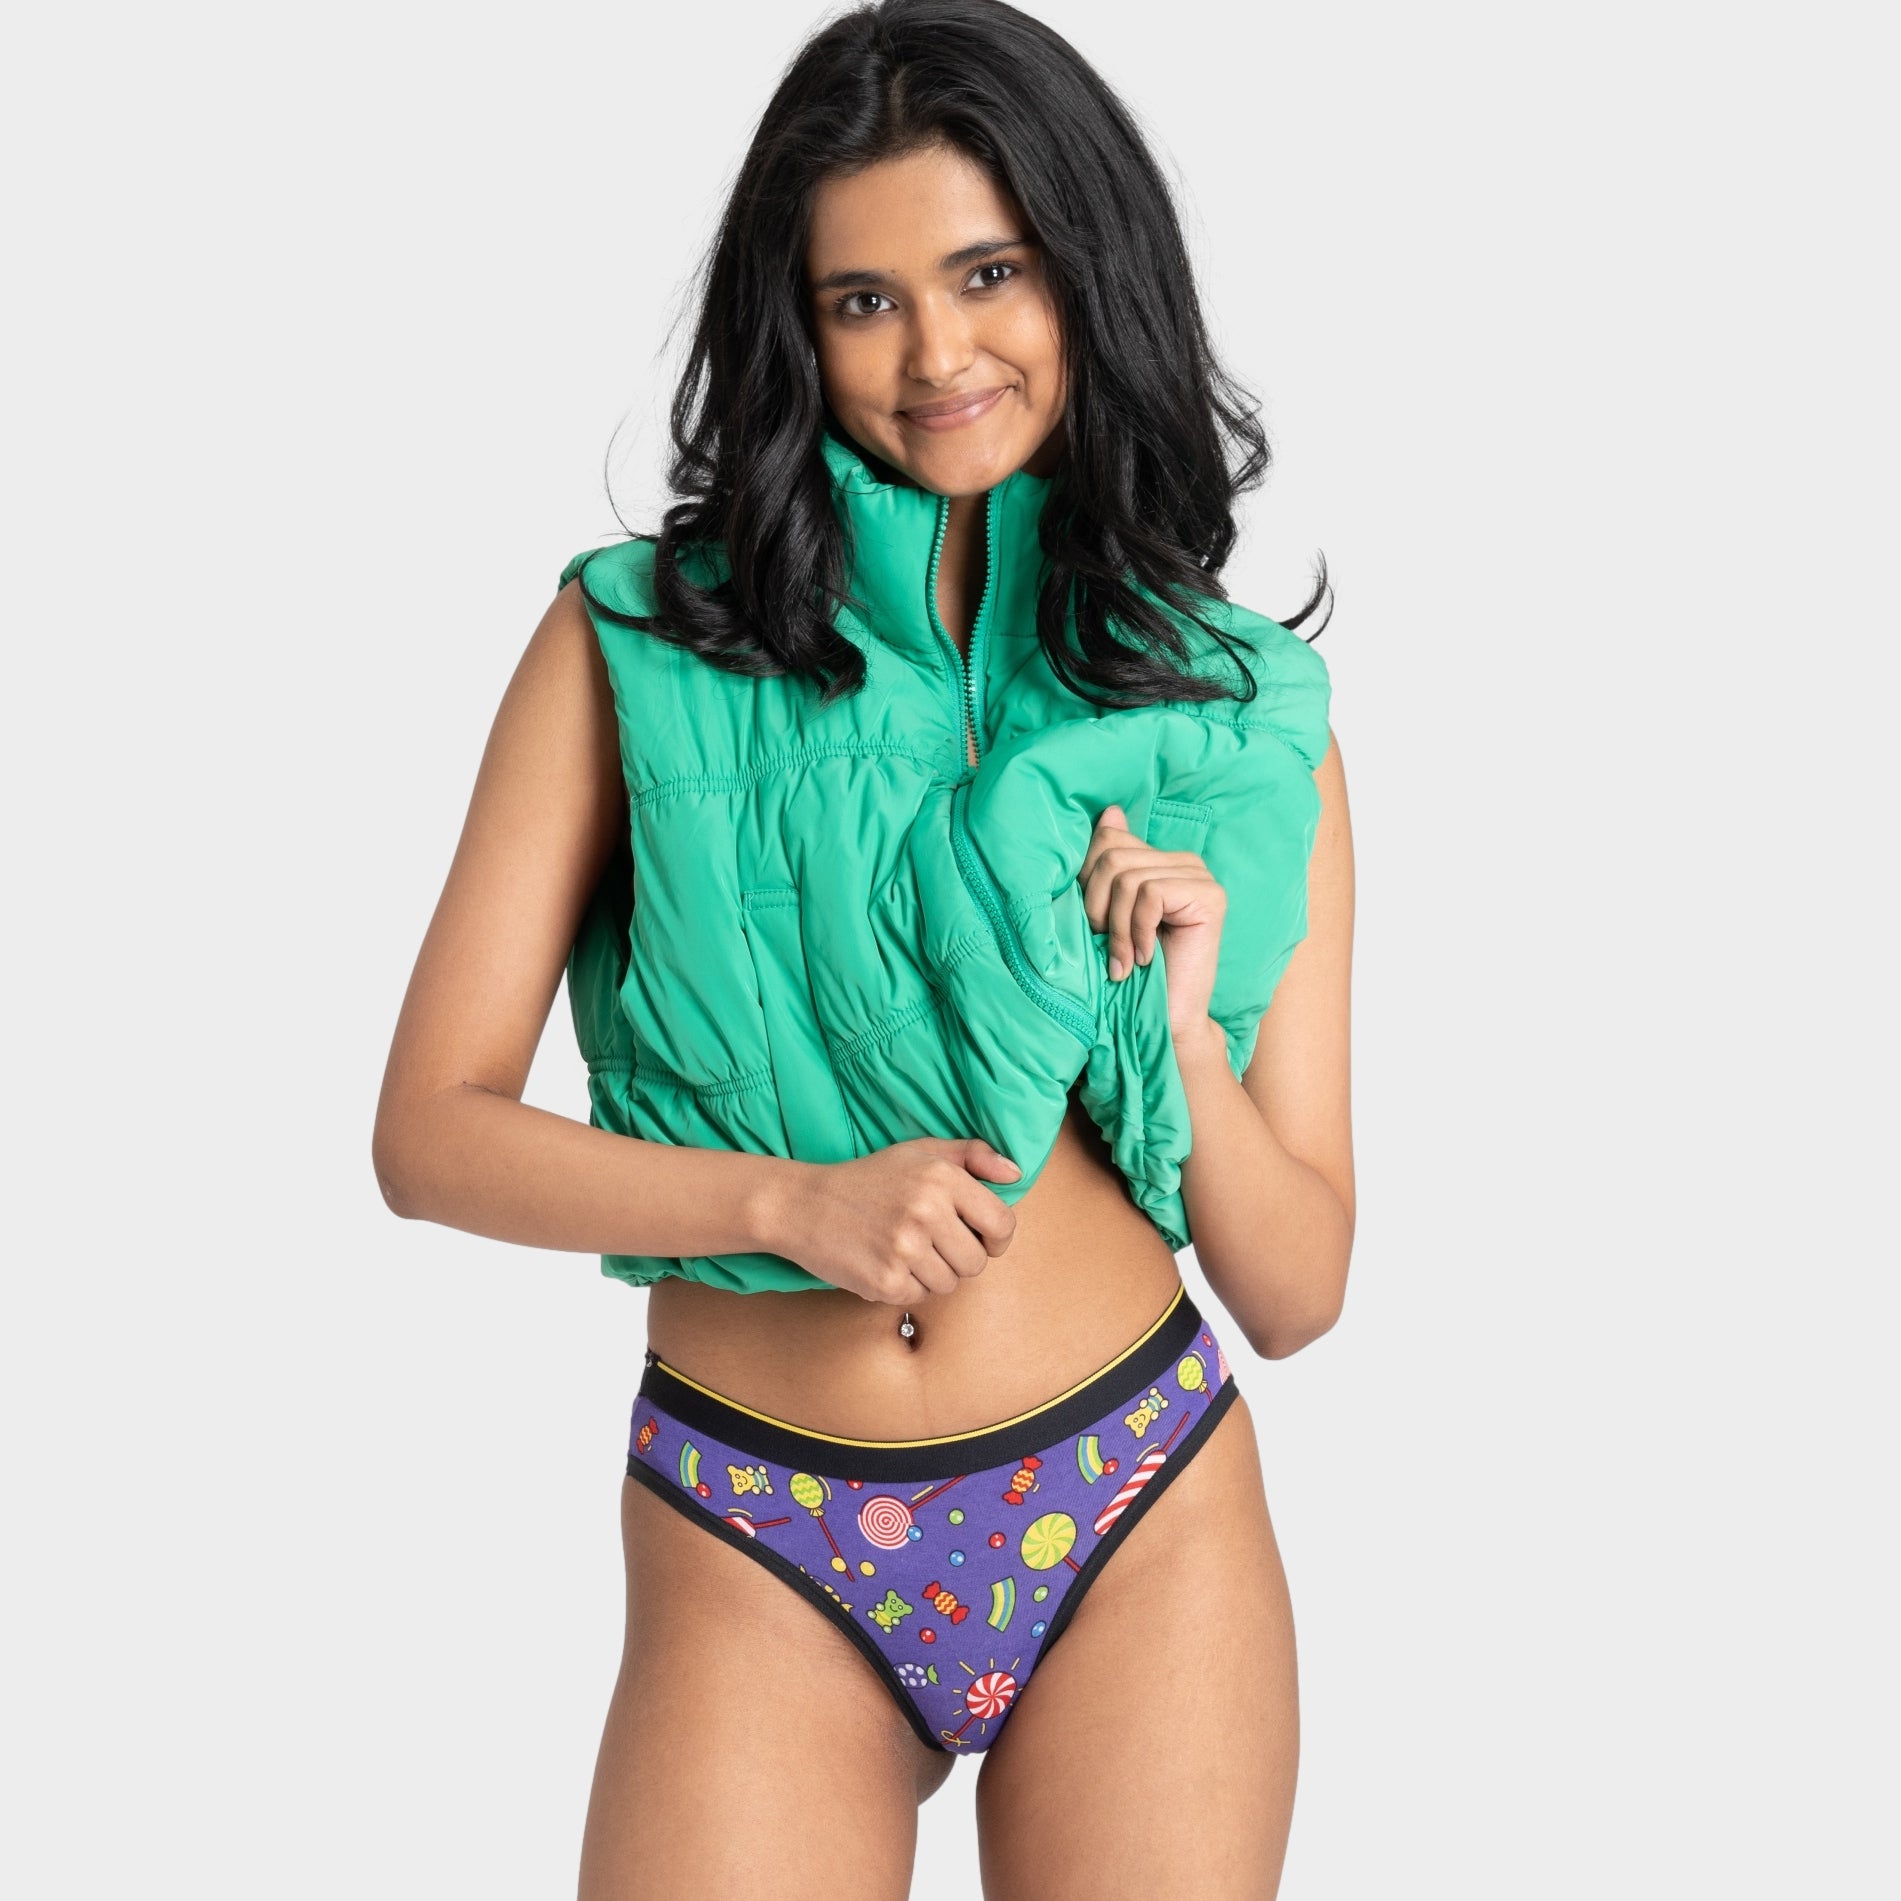 Bikini Panty at Rs 40/piece, Bikini Underwear For Women in Mumbai